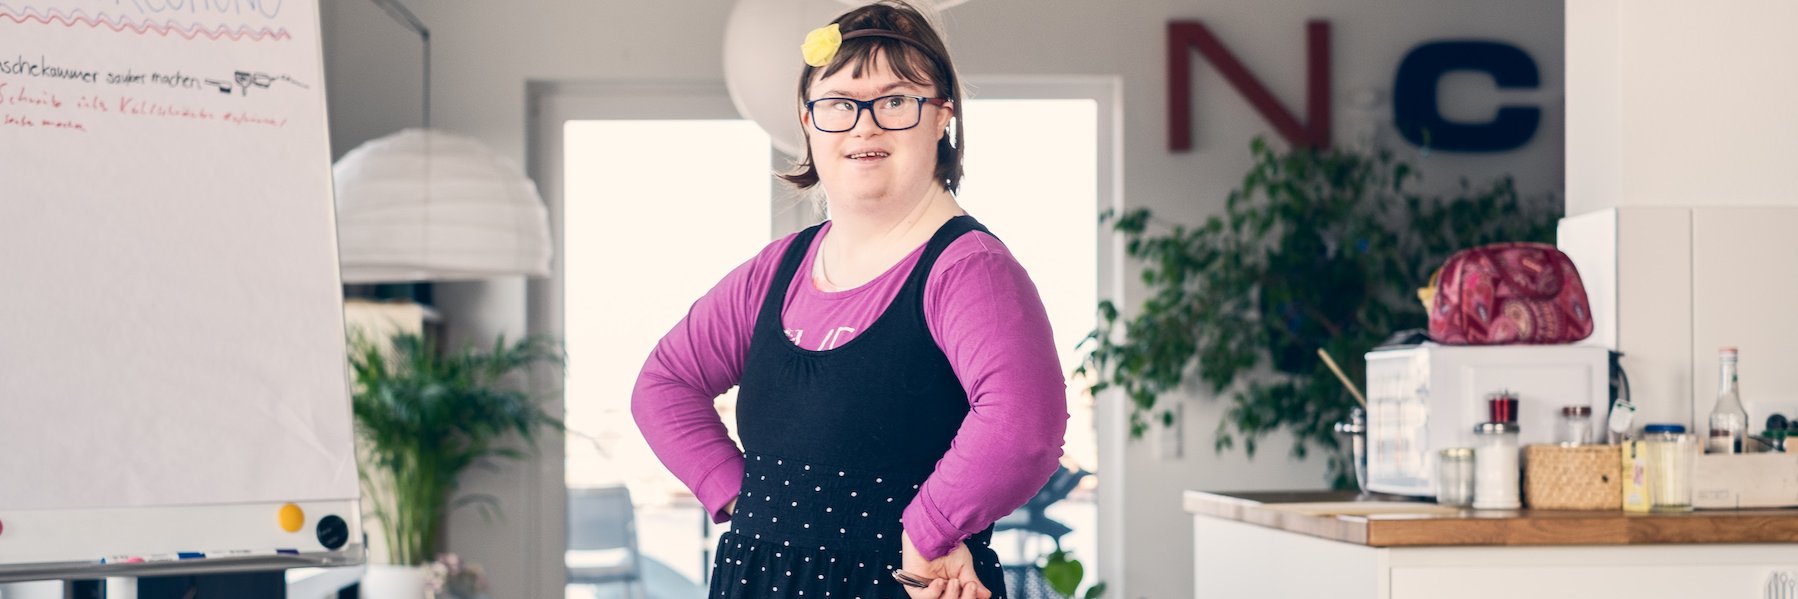 Eine junge Frau mit Downsyndrom steht in der WG-Küche neben einem Flipchart und blickt entschlossen in die Kamera